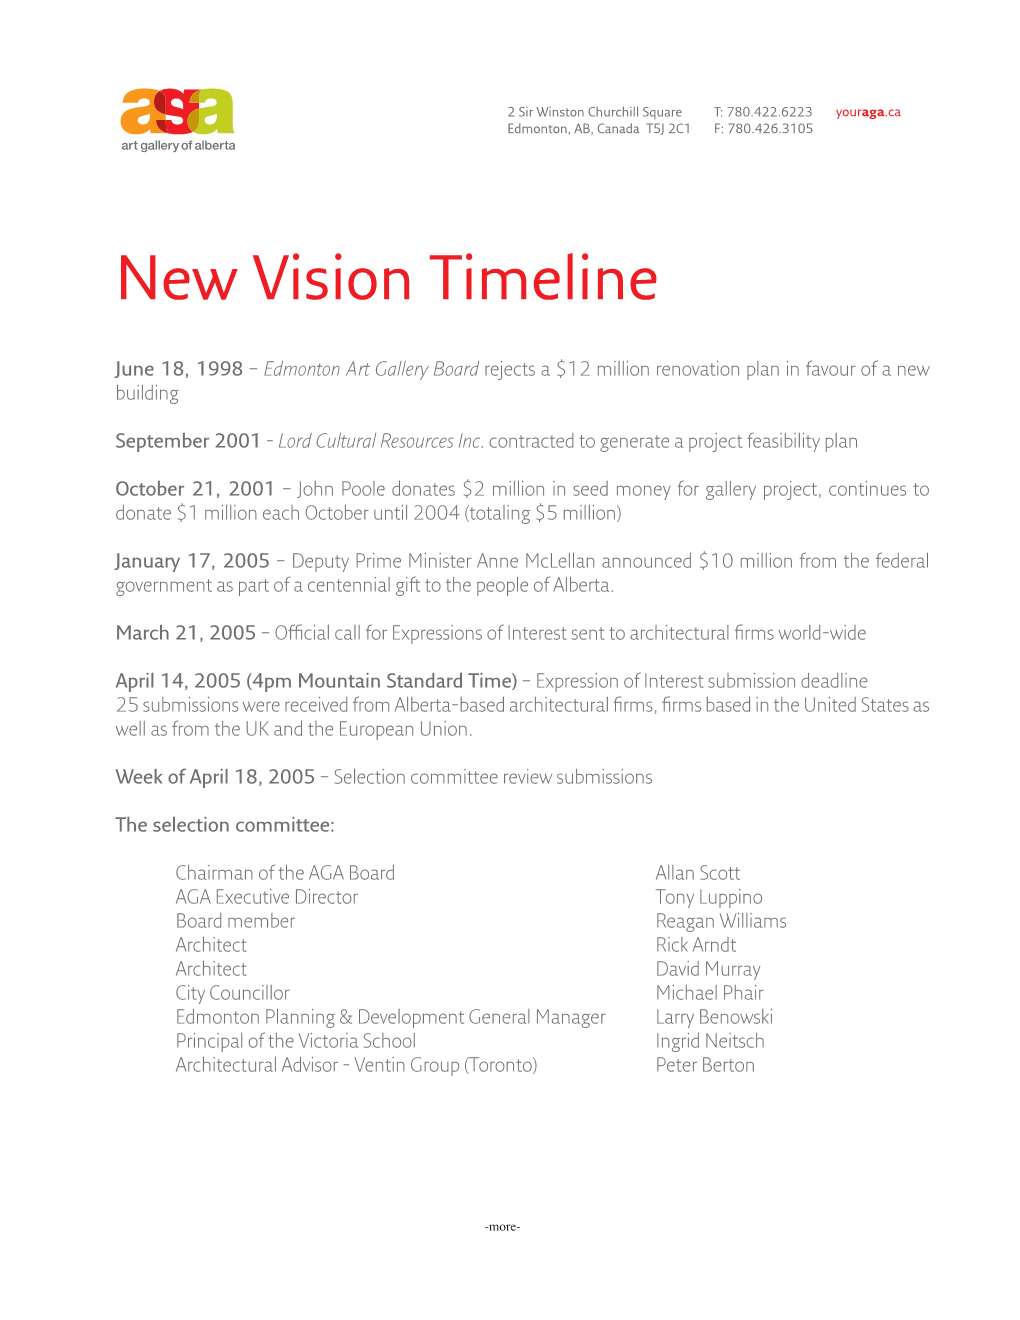 New Vision Timeline